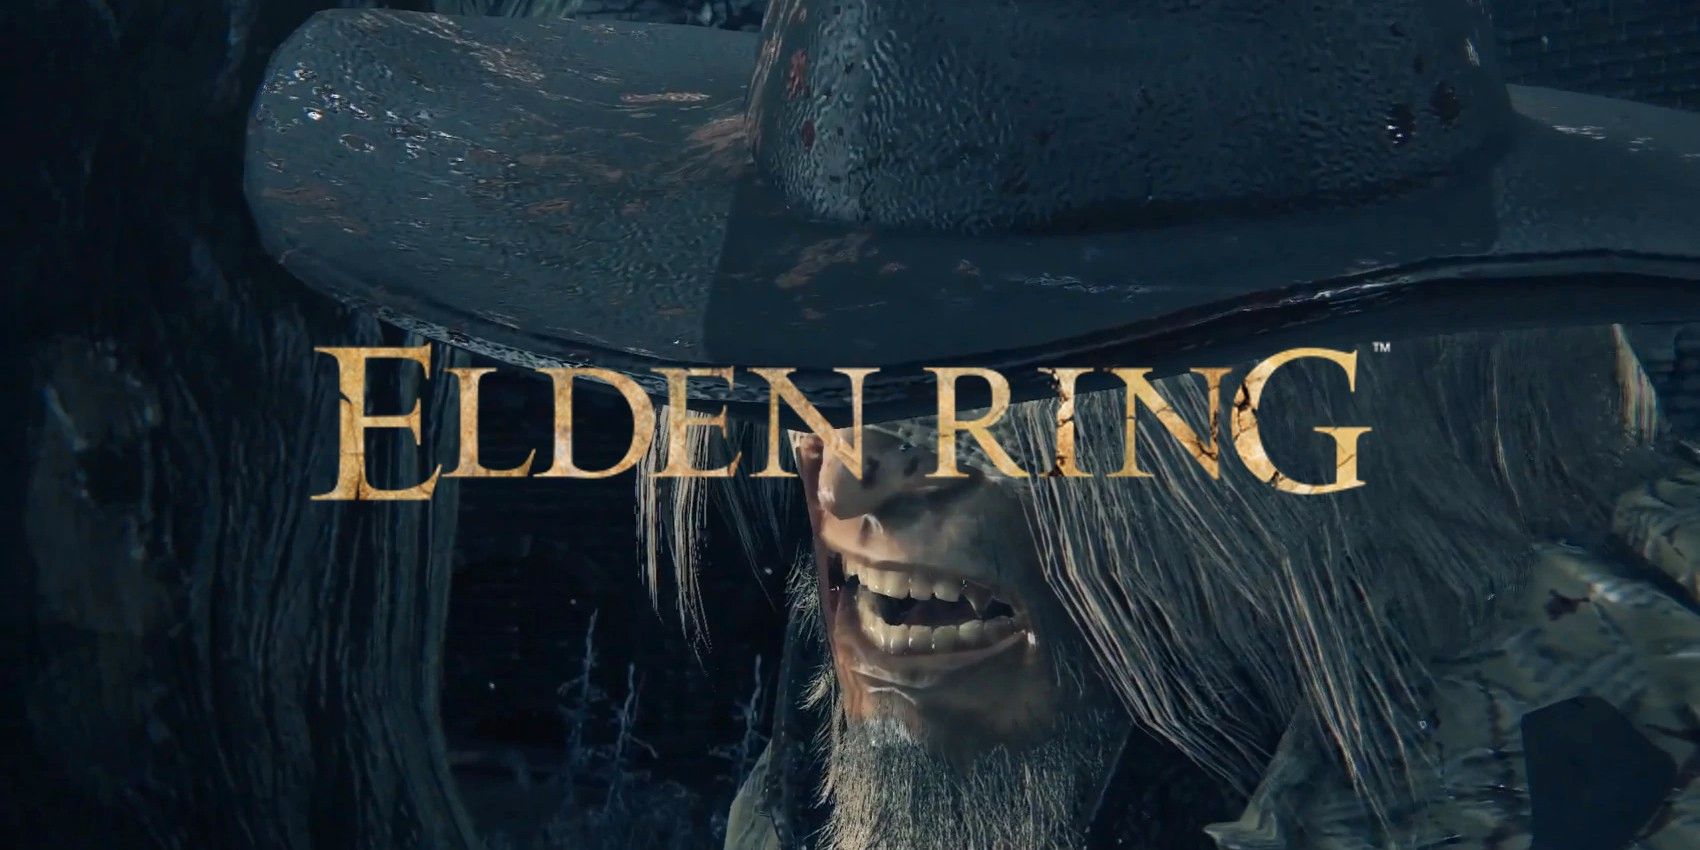 Elden Ring Build replica Bloodborne Boss, completo con Phase 2